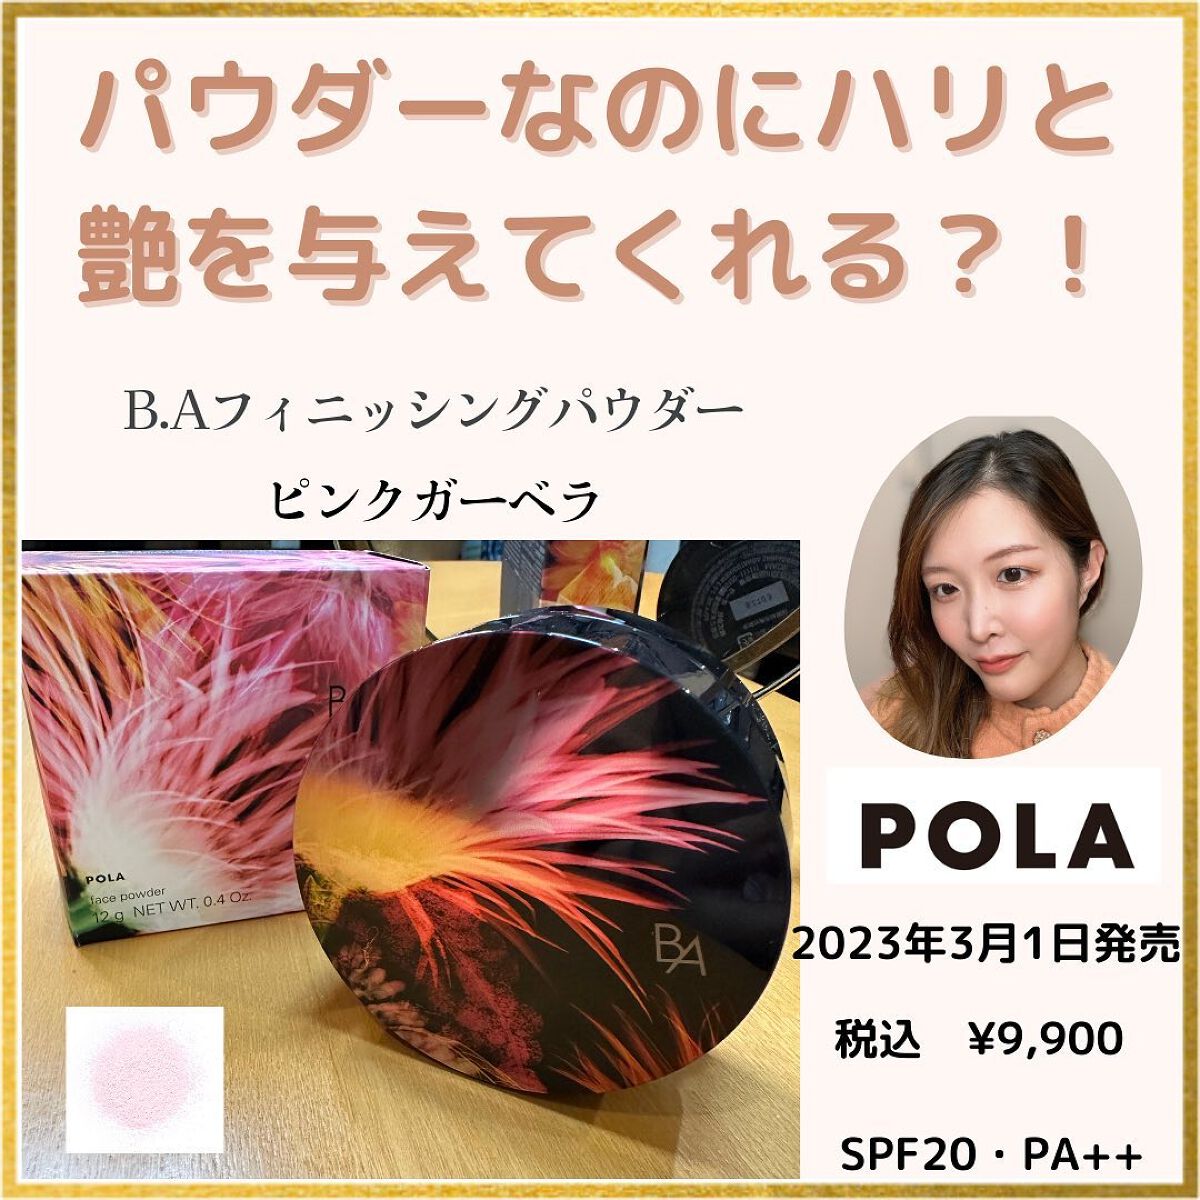 【限定発売品】pola BA フィニッシングパウダー ピンクガーベラ 12g